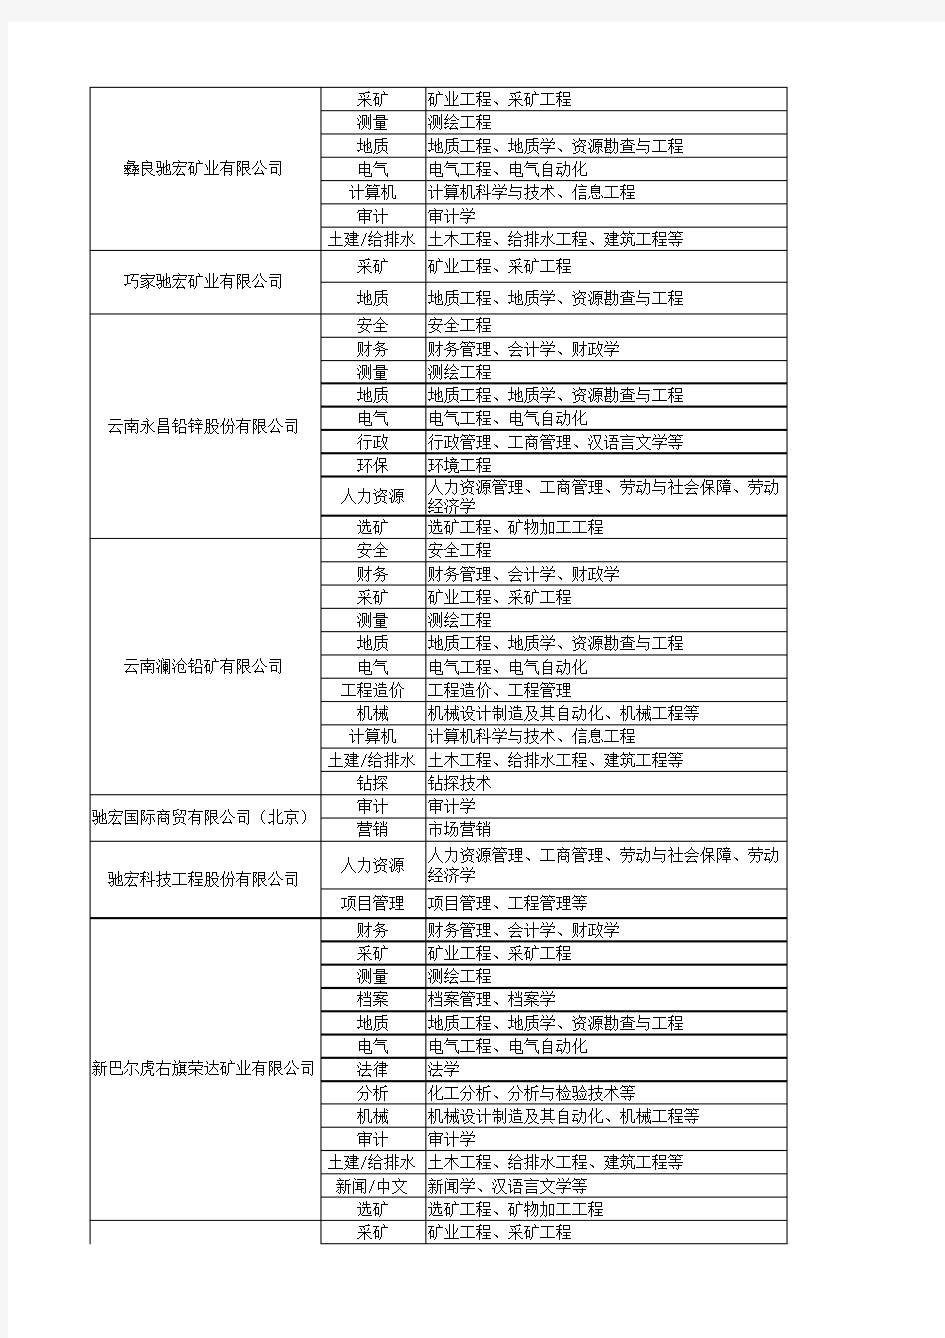 云南驰宏锌锗股份有限公司2015年校园招聘计划(附件)